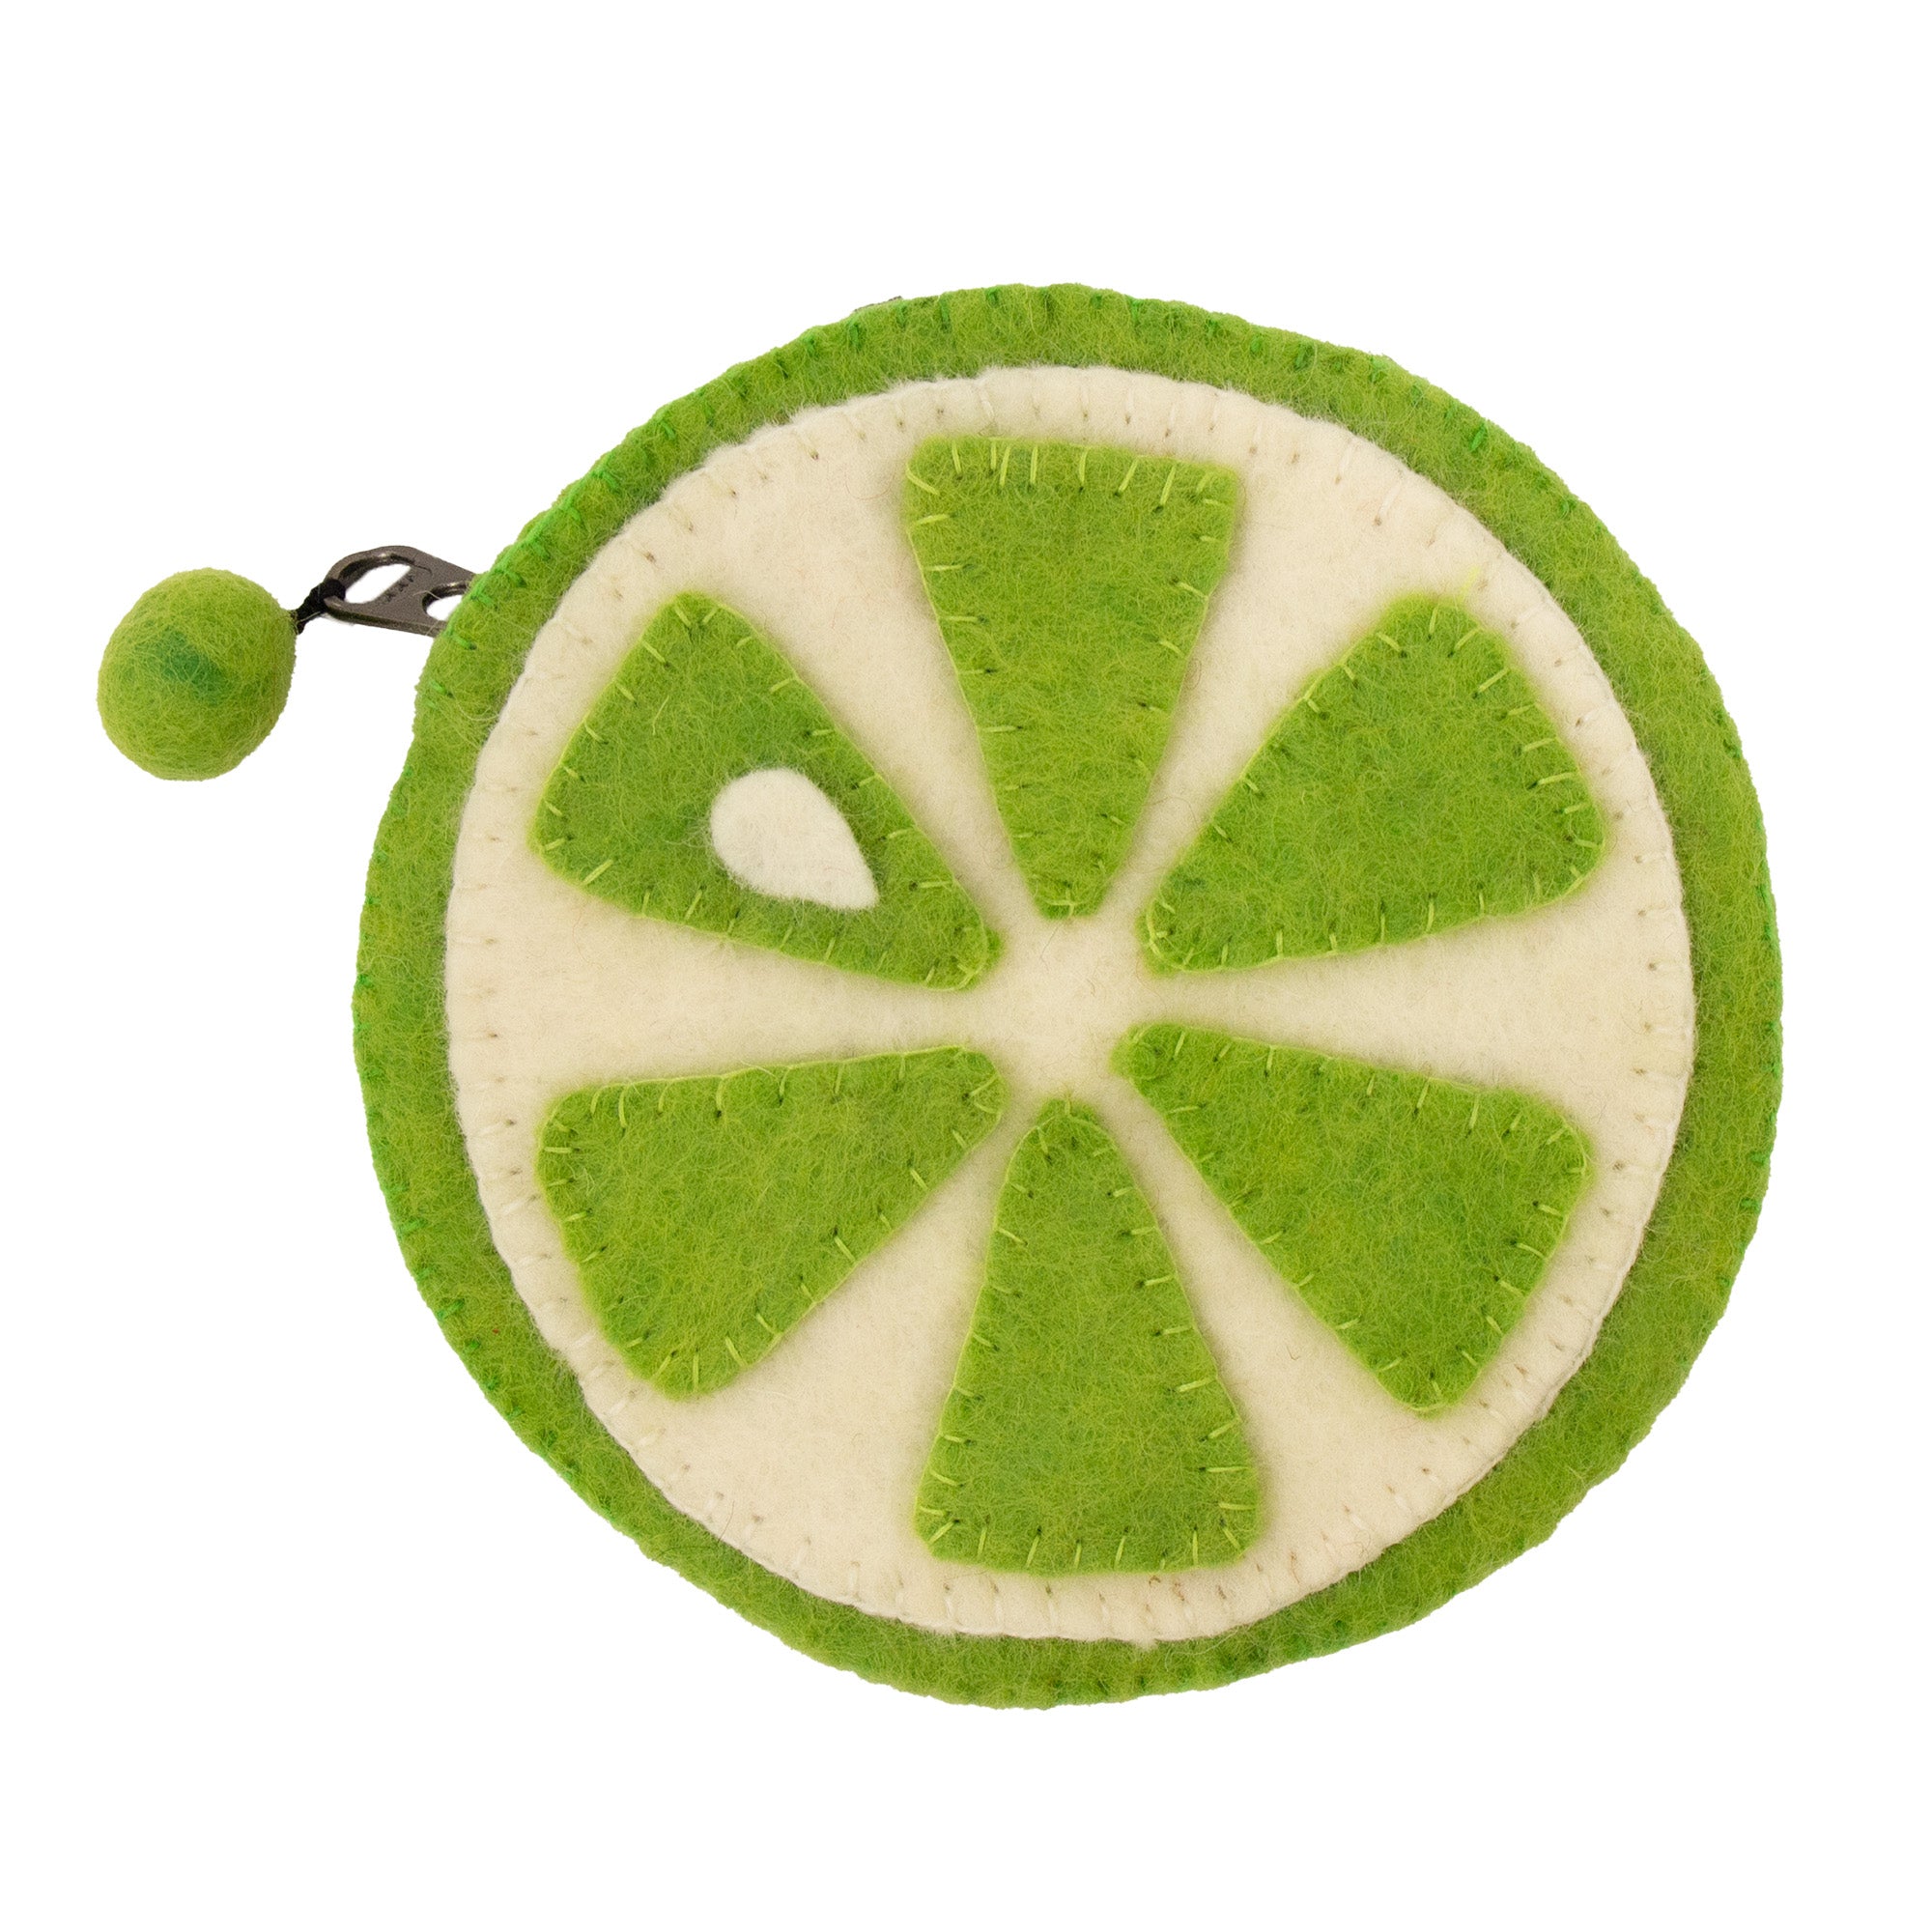 Handmade Felt Fruit Coin Purse - Lime